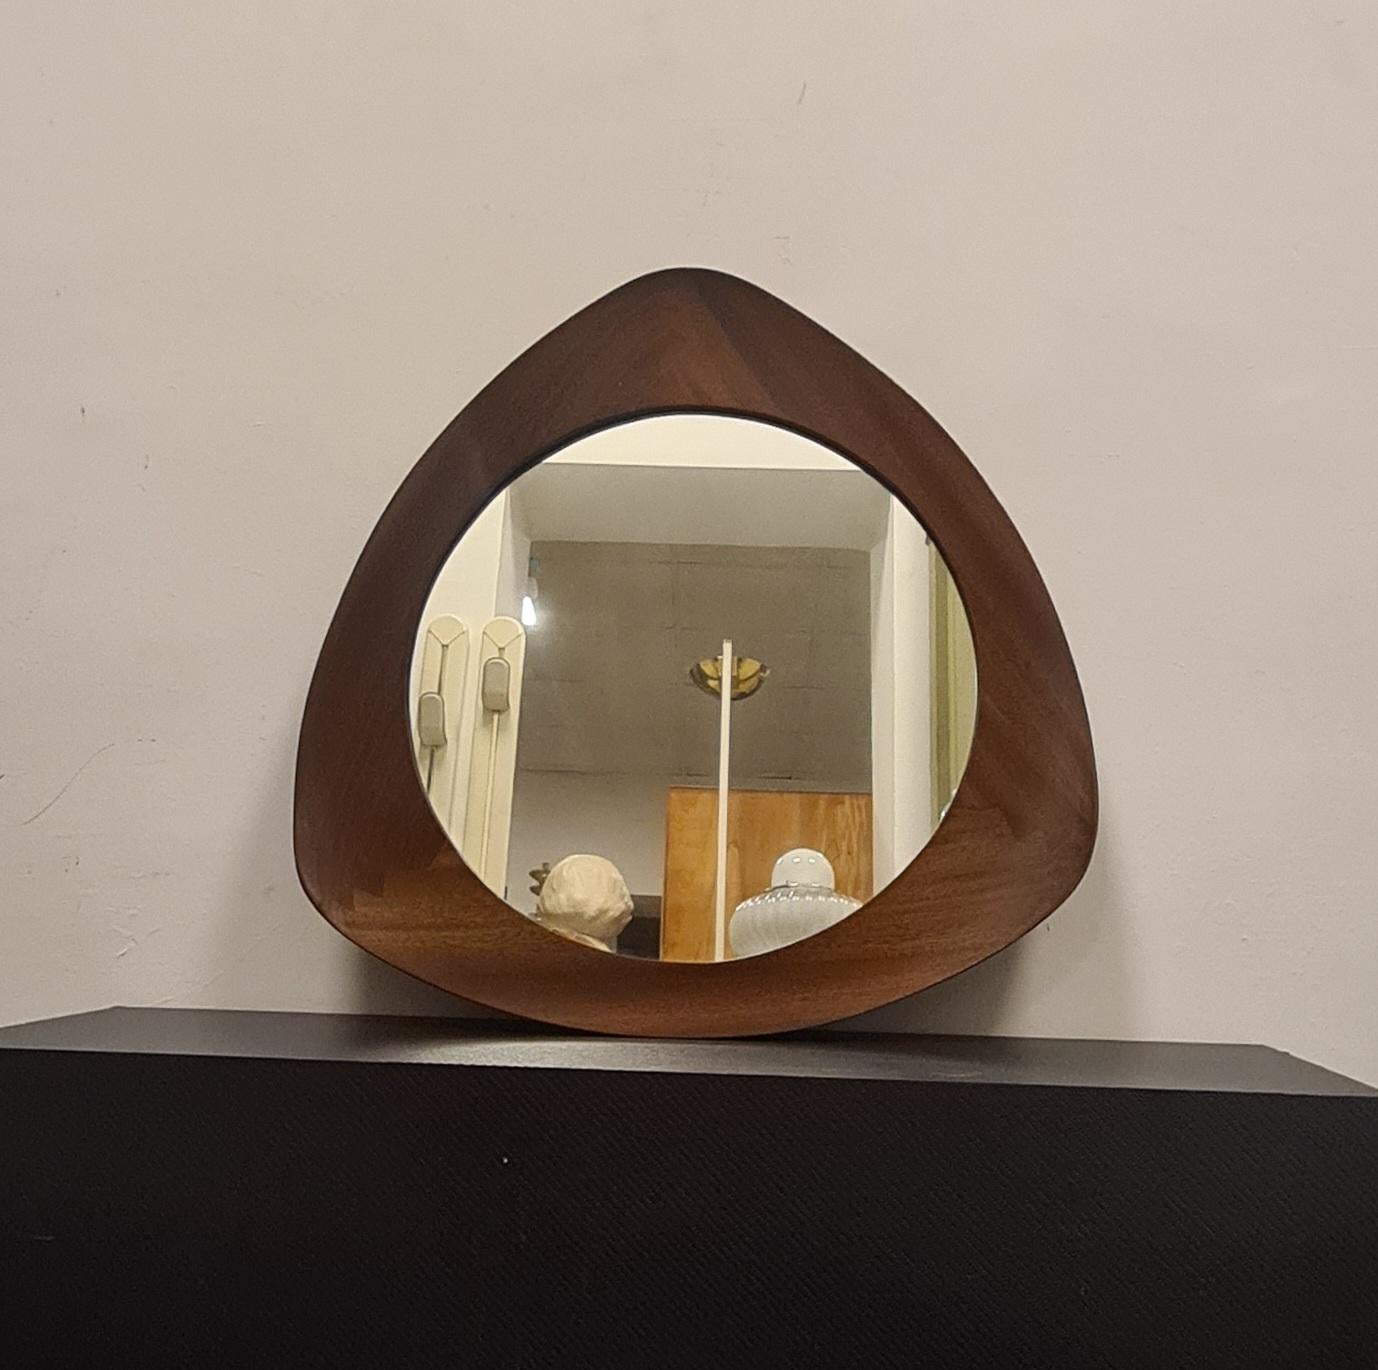 Miroir modèle Oscar conçu par Campo & Graffi.

Miroir raffiné de forme triangulaire incurvée, produit par Home Torino en 1958 d'après un dessin de Franco Campo et Carlo Graffi.

Très rare, car la collaboration entre les deux designers et la